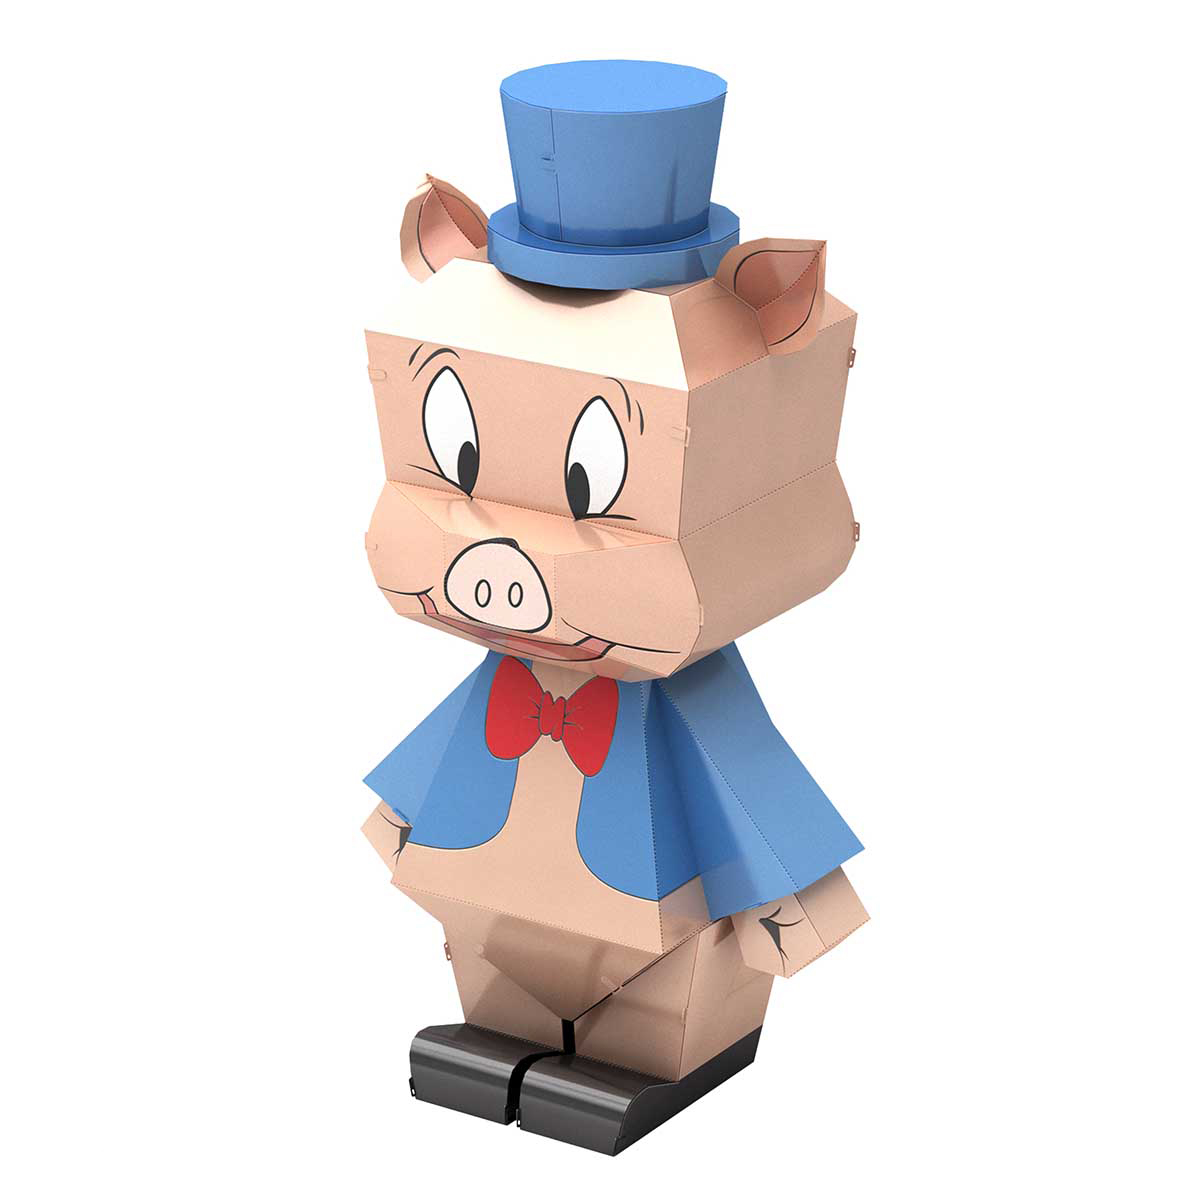 Porky Pig Pop Culture Cartoon 3D Puzzle